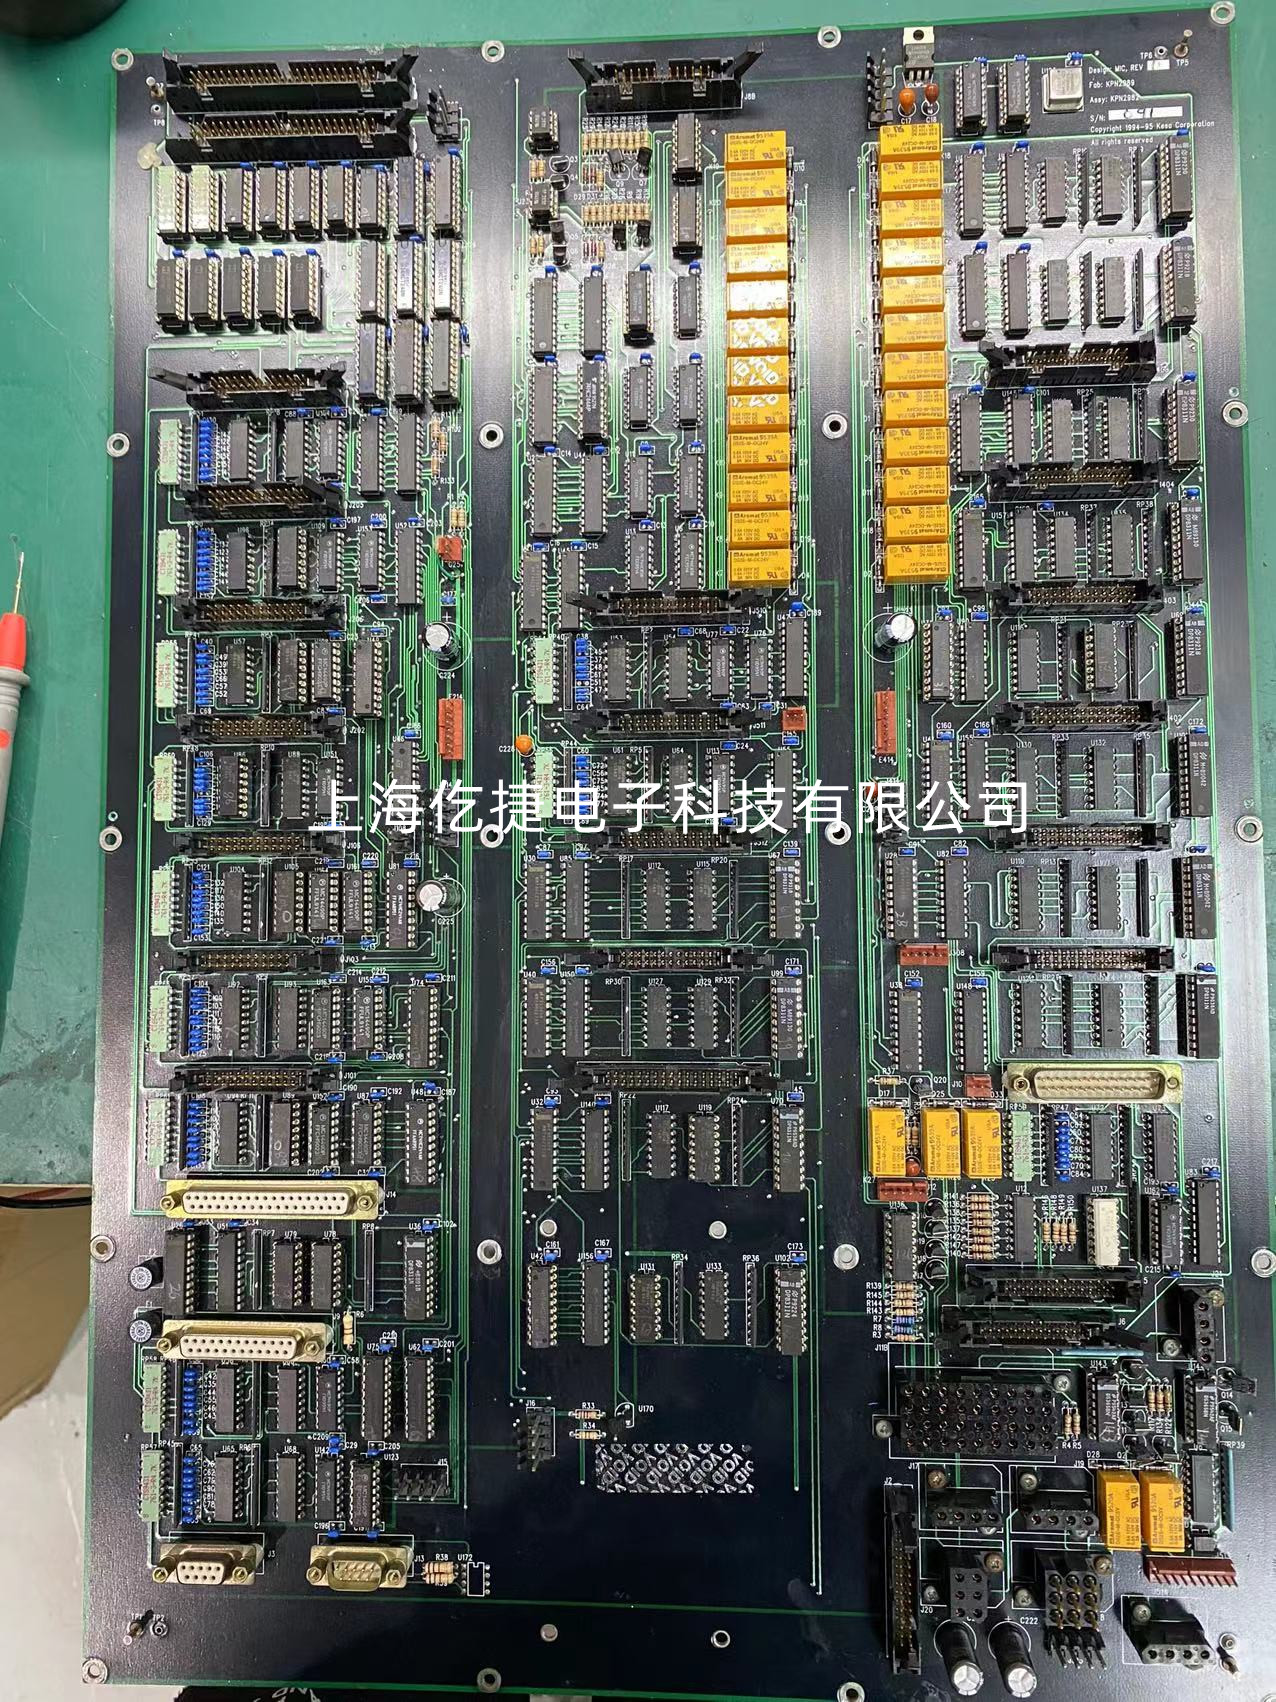 黑龙江安川变频器V1000系列维修